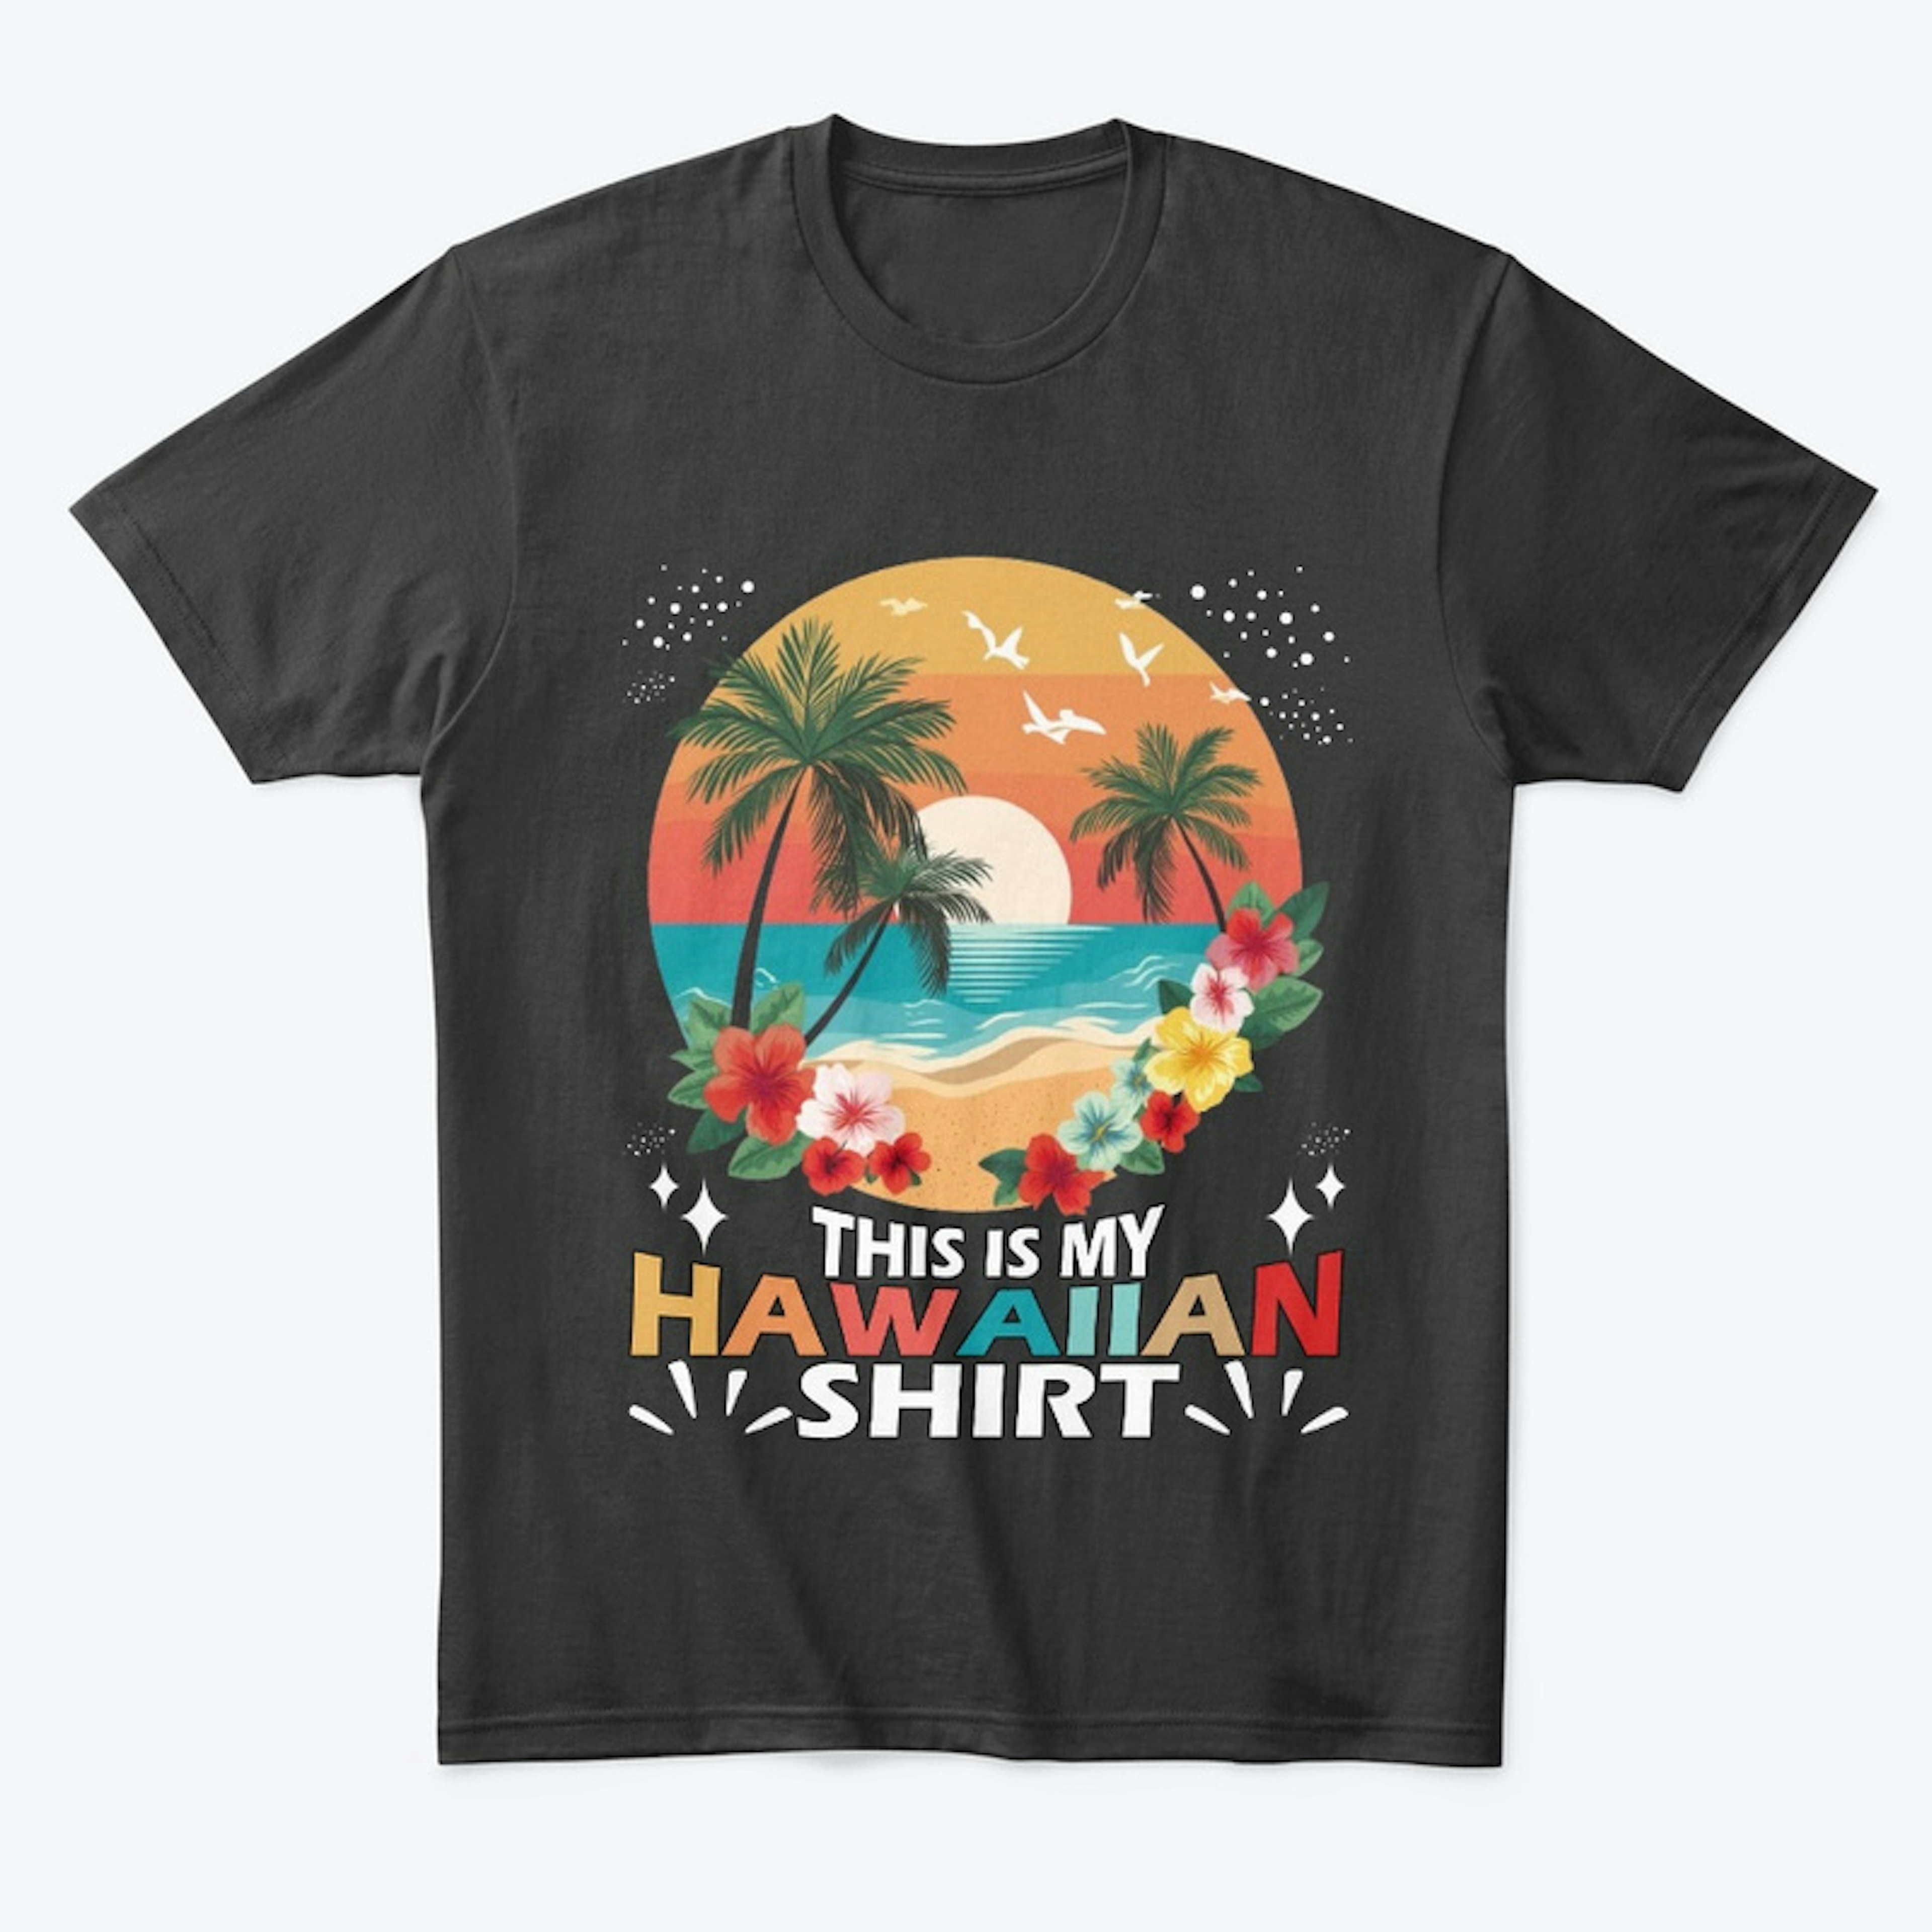 This Is My HAWAIIAN Shirt